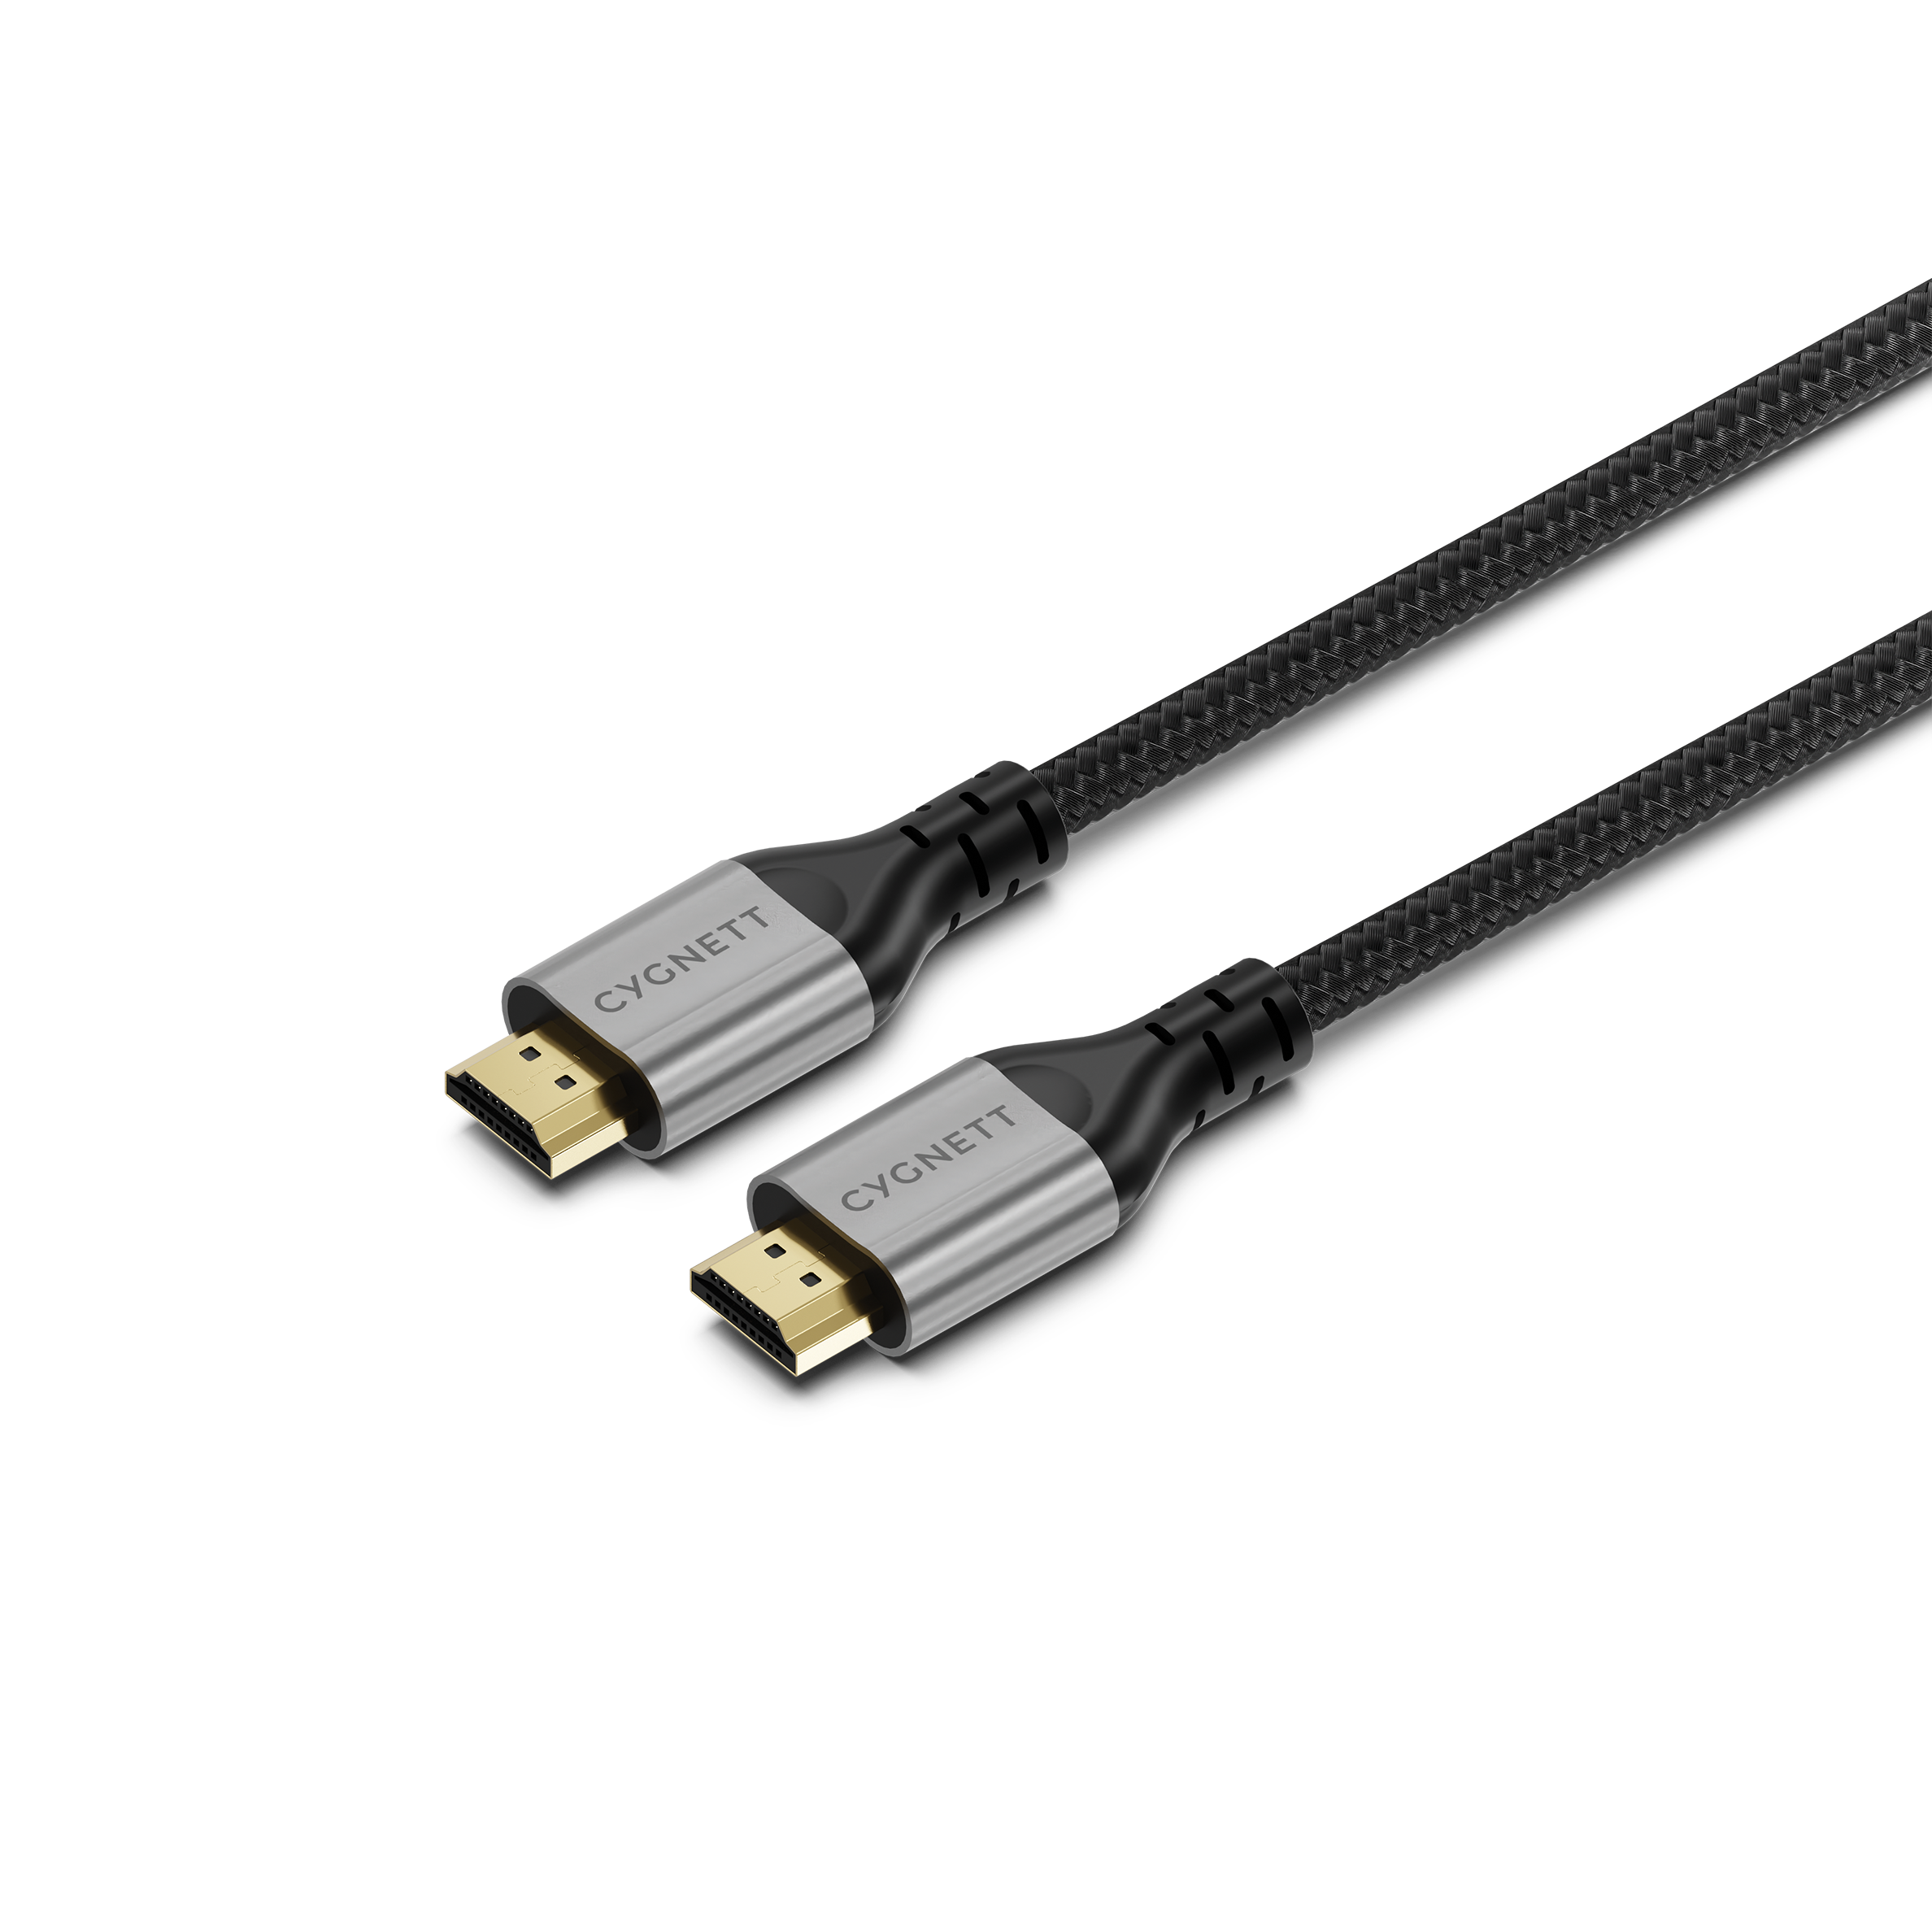 8K HDMI to HDMI Cable - 1.5m Black - Cygnett (AU)